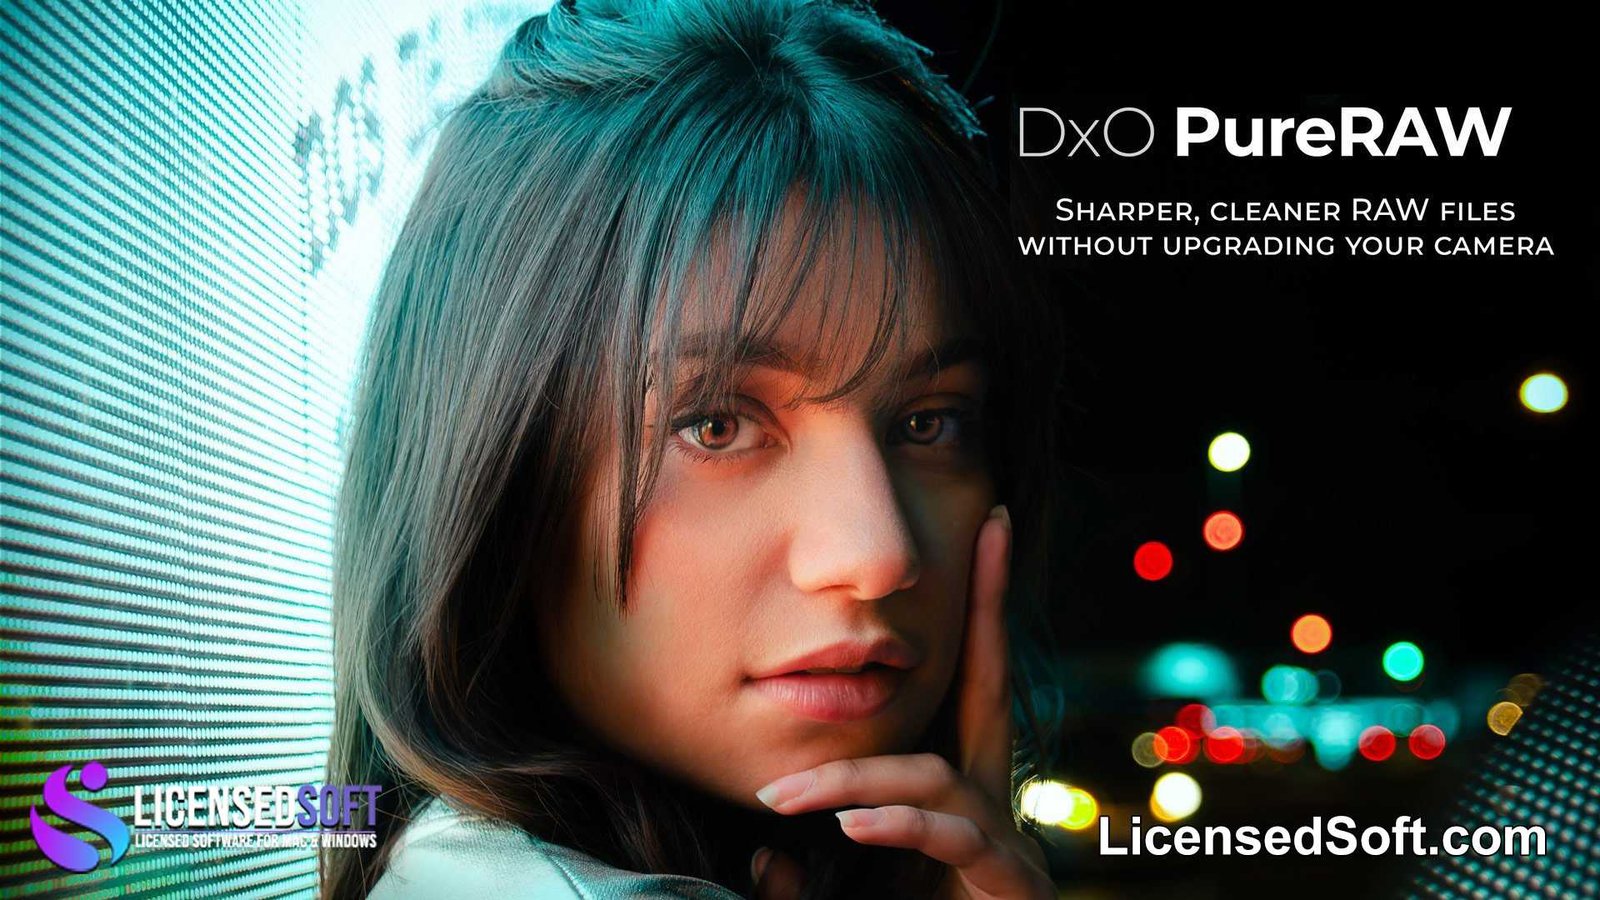 DxO PureRAW 3.9 Lifetime Premium By LicensedSoft